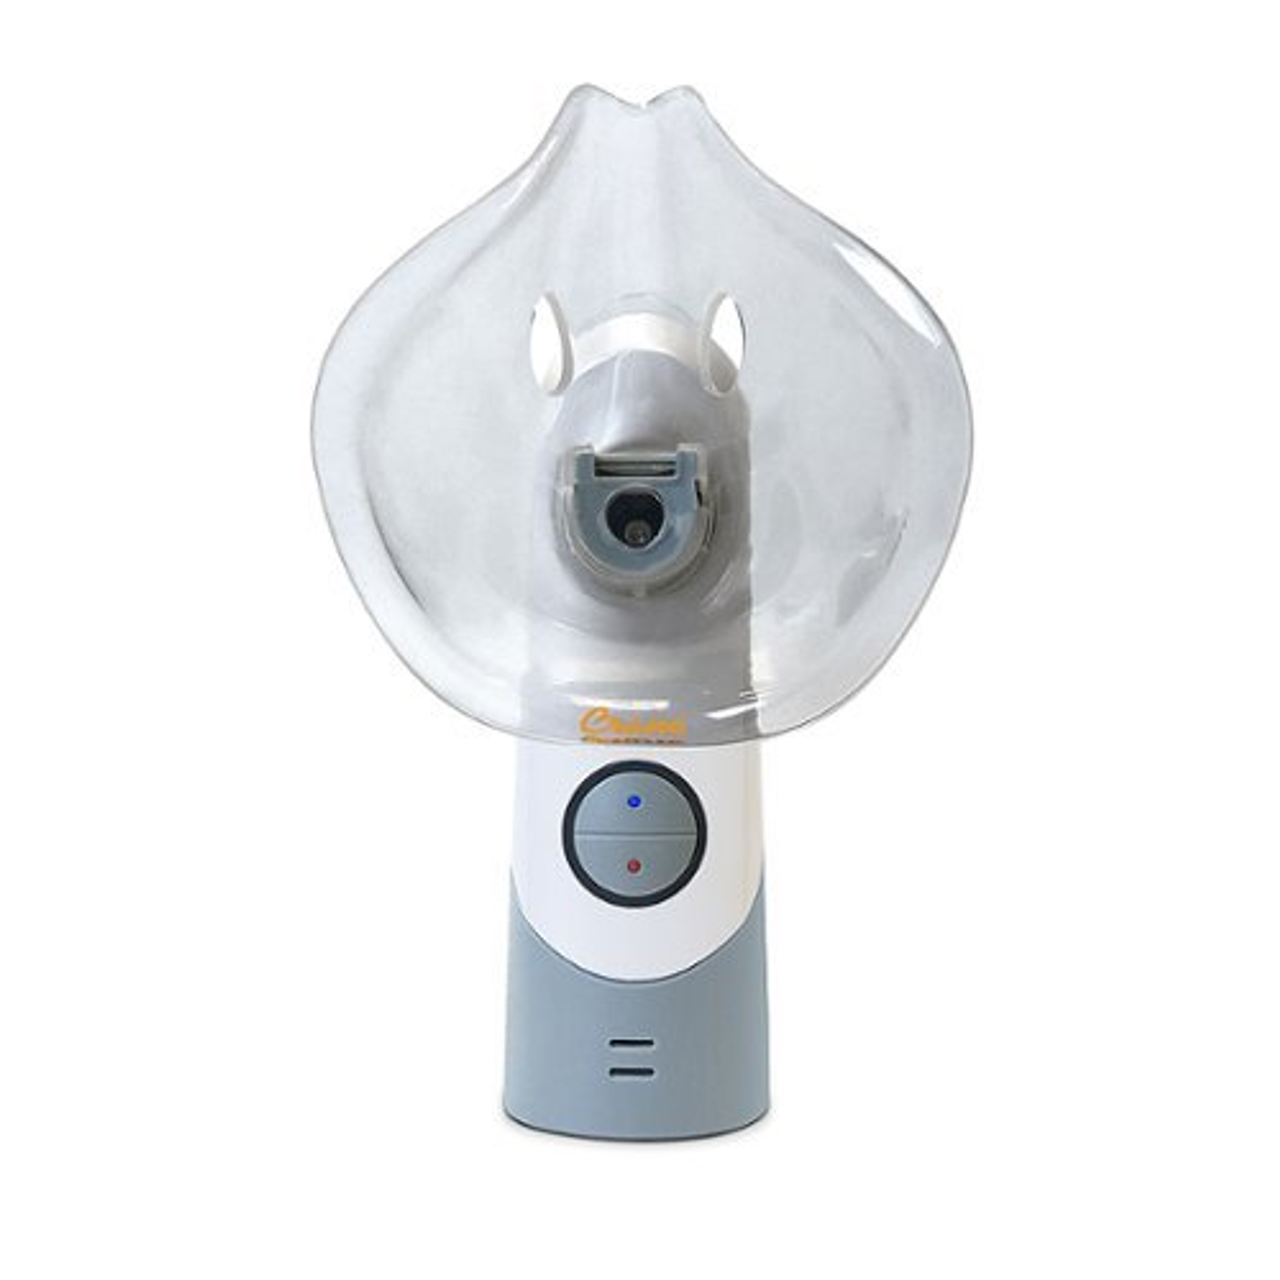 CRANE - Warm Steam & Cool Mist Cordless Portable Mist Inhaler - White/Gray